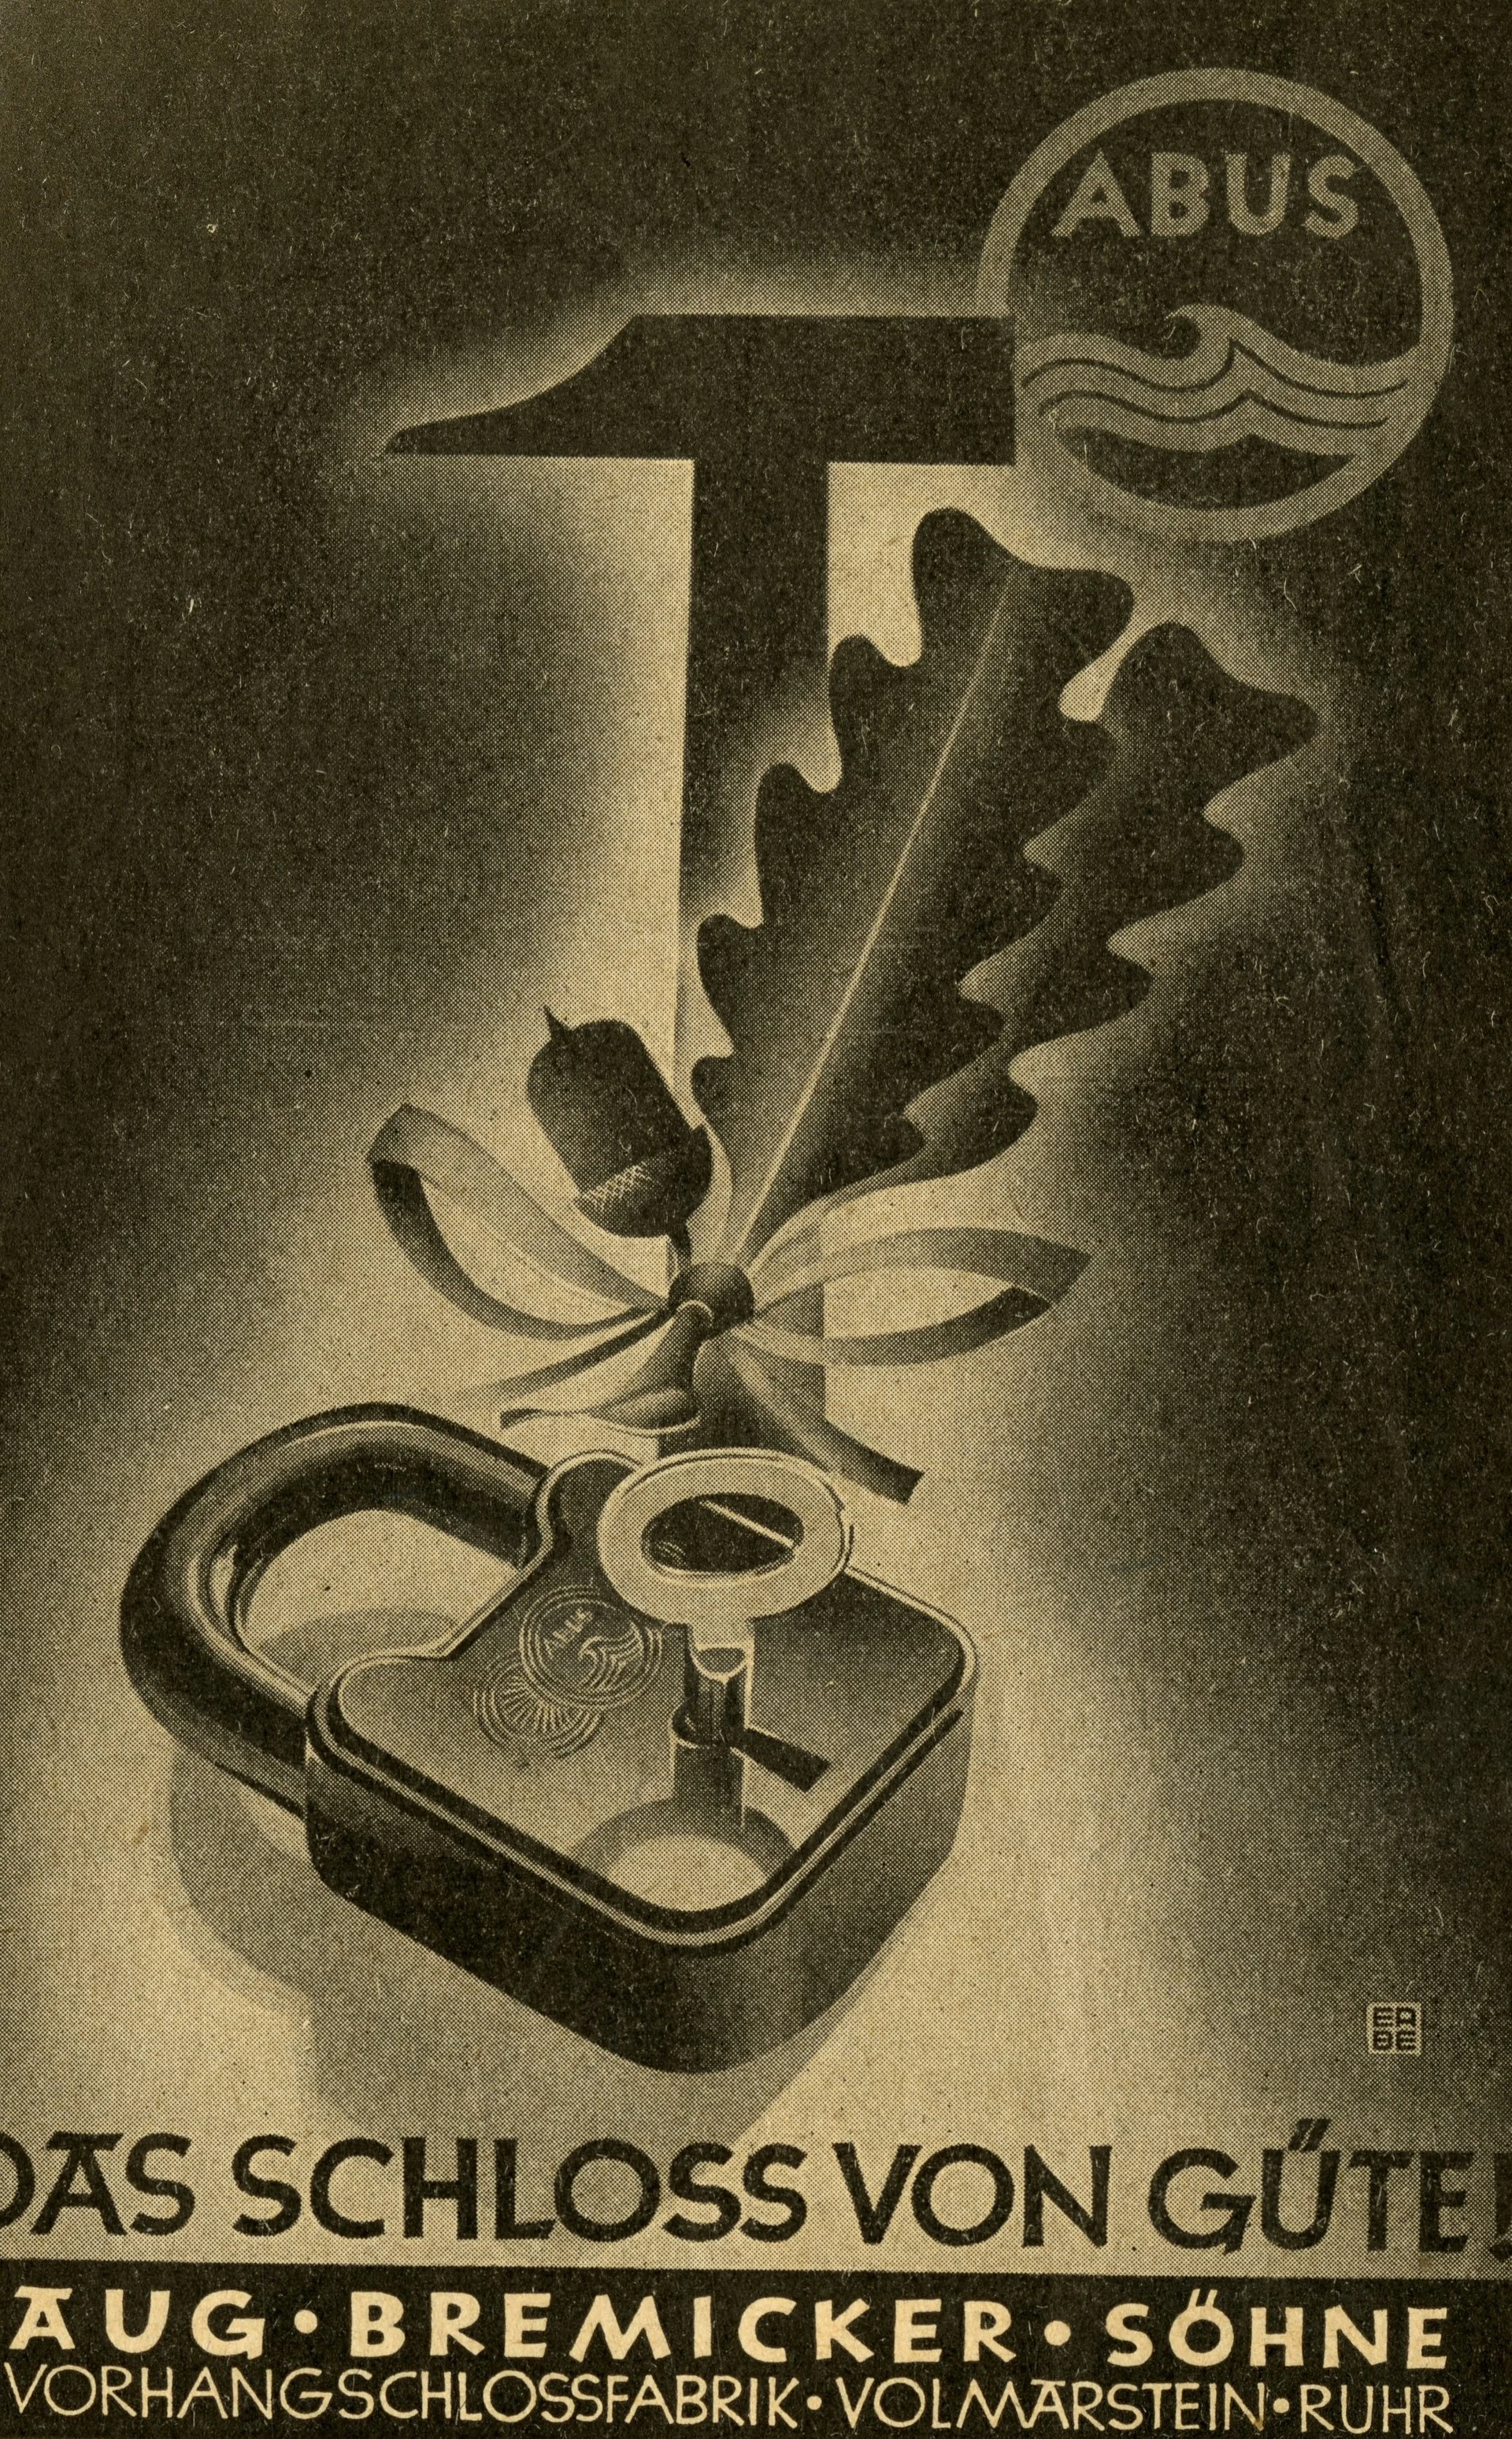 Manifesto di colore scuro che raffigura un lucchetto insieme a un ramo di quercia e a un martello, con la scritta "Das Schloss von Güte!" (Il lucchetto di qualità!) © ABUS